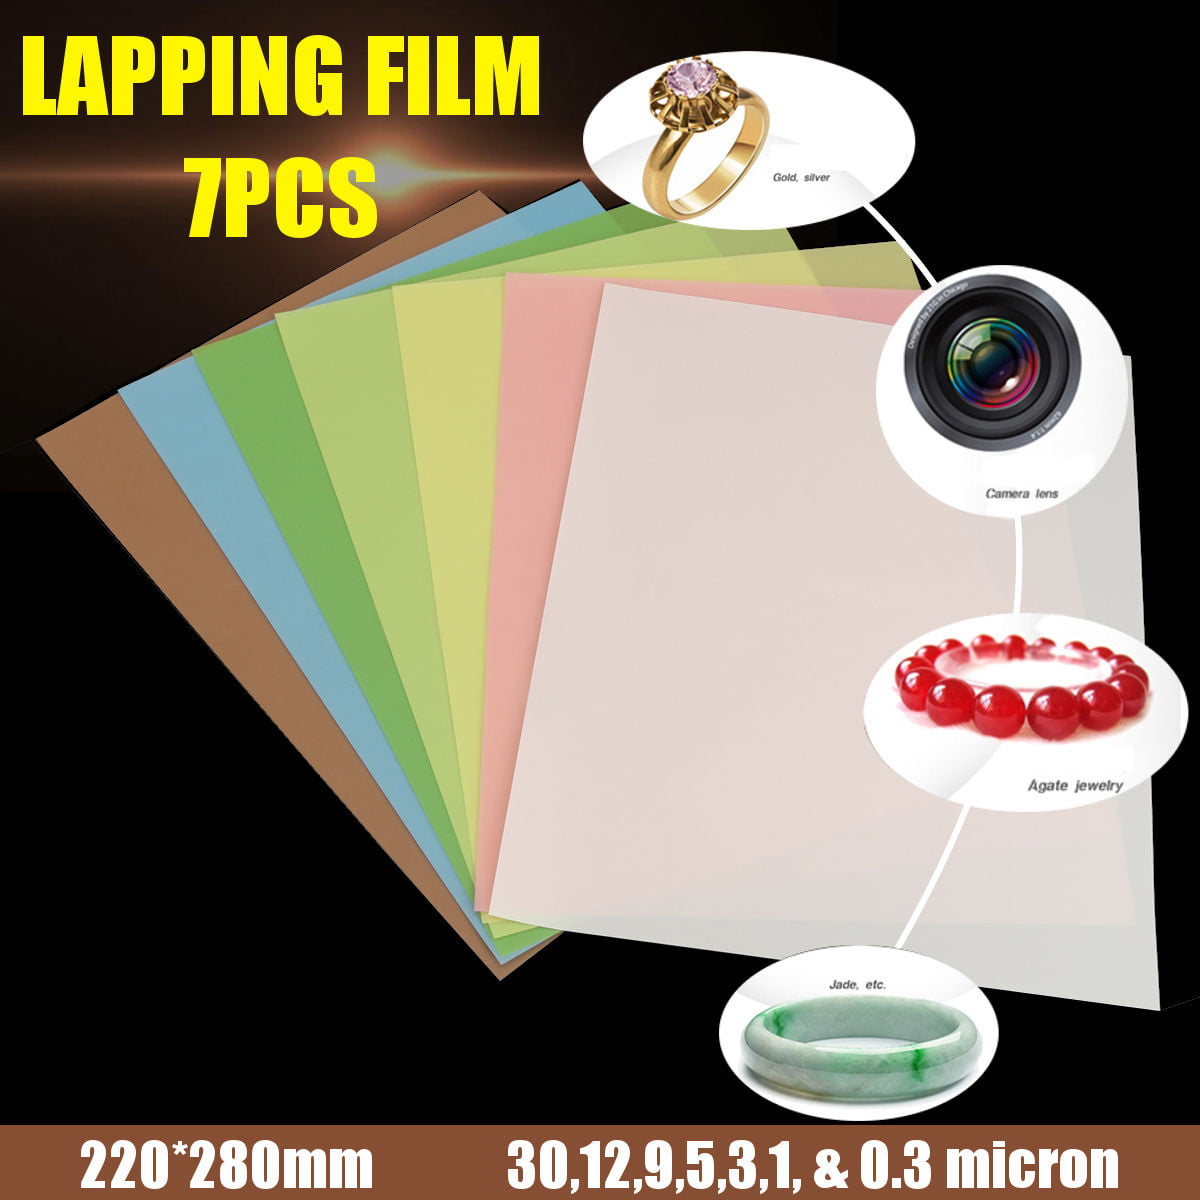 & 0.3μ 7PCS 8.7 X 11 Lapping Film Sheets Accessory 1 Each Of 30,12,9,5,3,1 